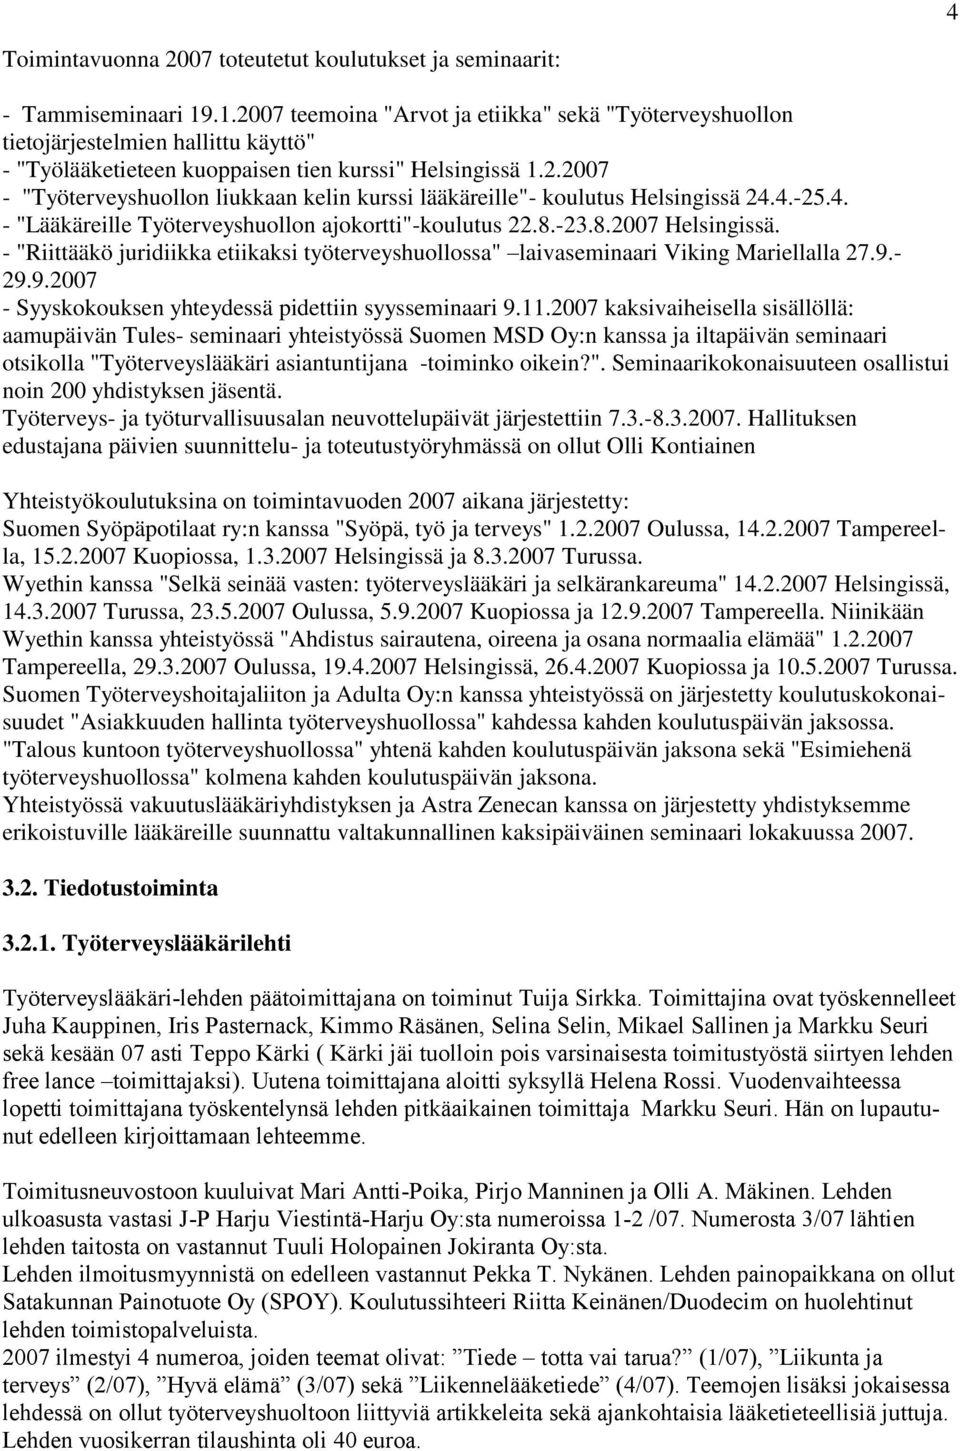 4.-25.4. - "Lääkäreille Työterveyshuollon ajokortti"-koulutus 22.8.-23.8.2007 Helsingissä. - "Riittääkö juridiikka etiikaksi työterveyshuollossa" laivaseminaari Viking Mariellalla 27.9.